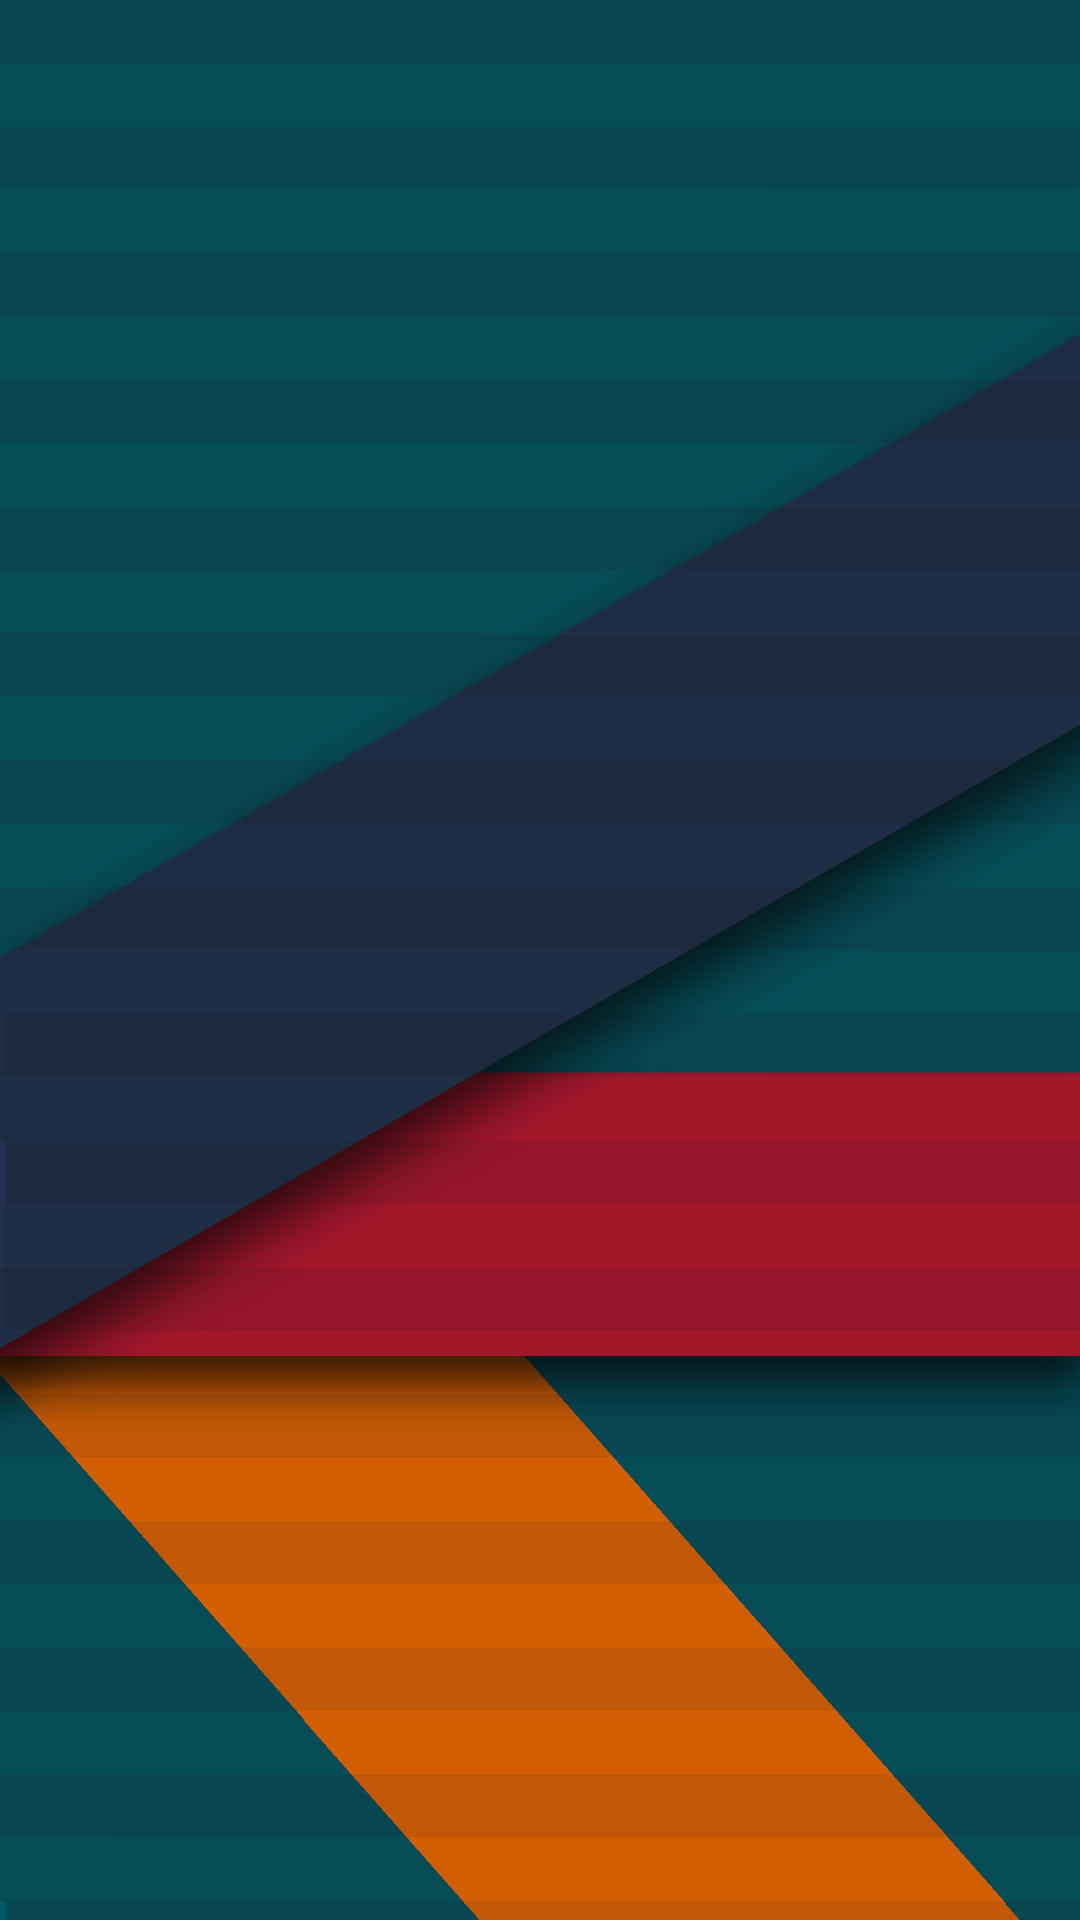 Einbunter Und Grüner Hintergrund Mit Einem Roten, Orangefarbenen Und Blauen Streifen.